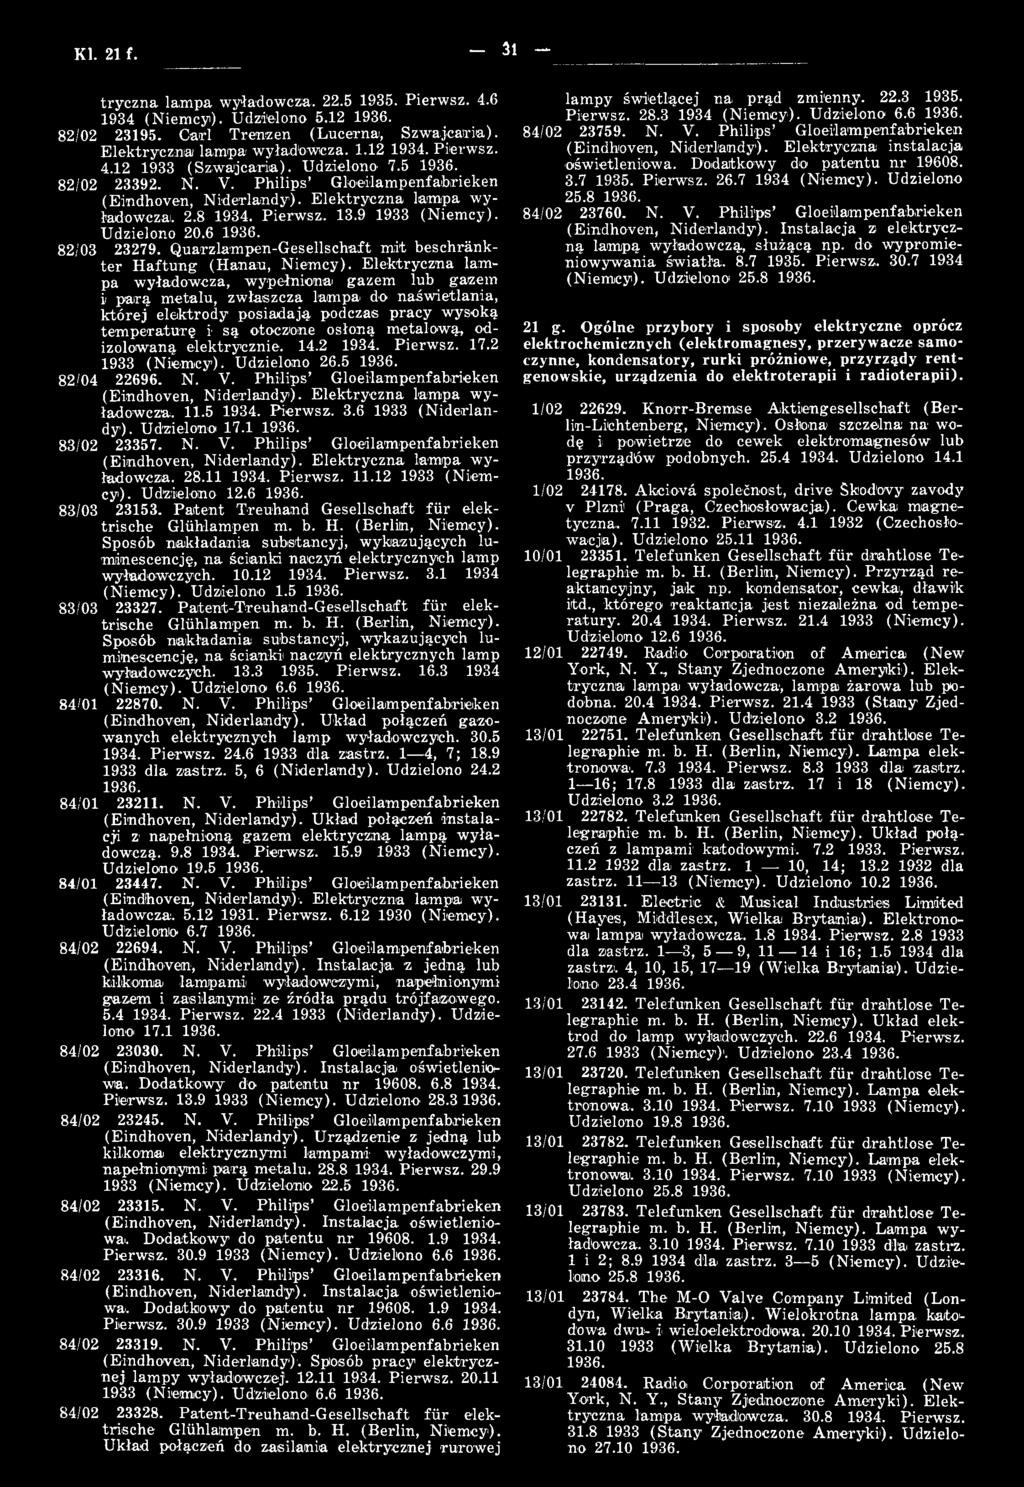 metalową, odizolowaną elektrycznie. 14.2 1934. Pierwsz. 17.2 1933 (N iem cy). Udzielono 26.5 82/04 22696. N. V. P hilips G loeilam penfahrieken (Eindhoven, N iderlandy).